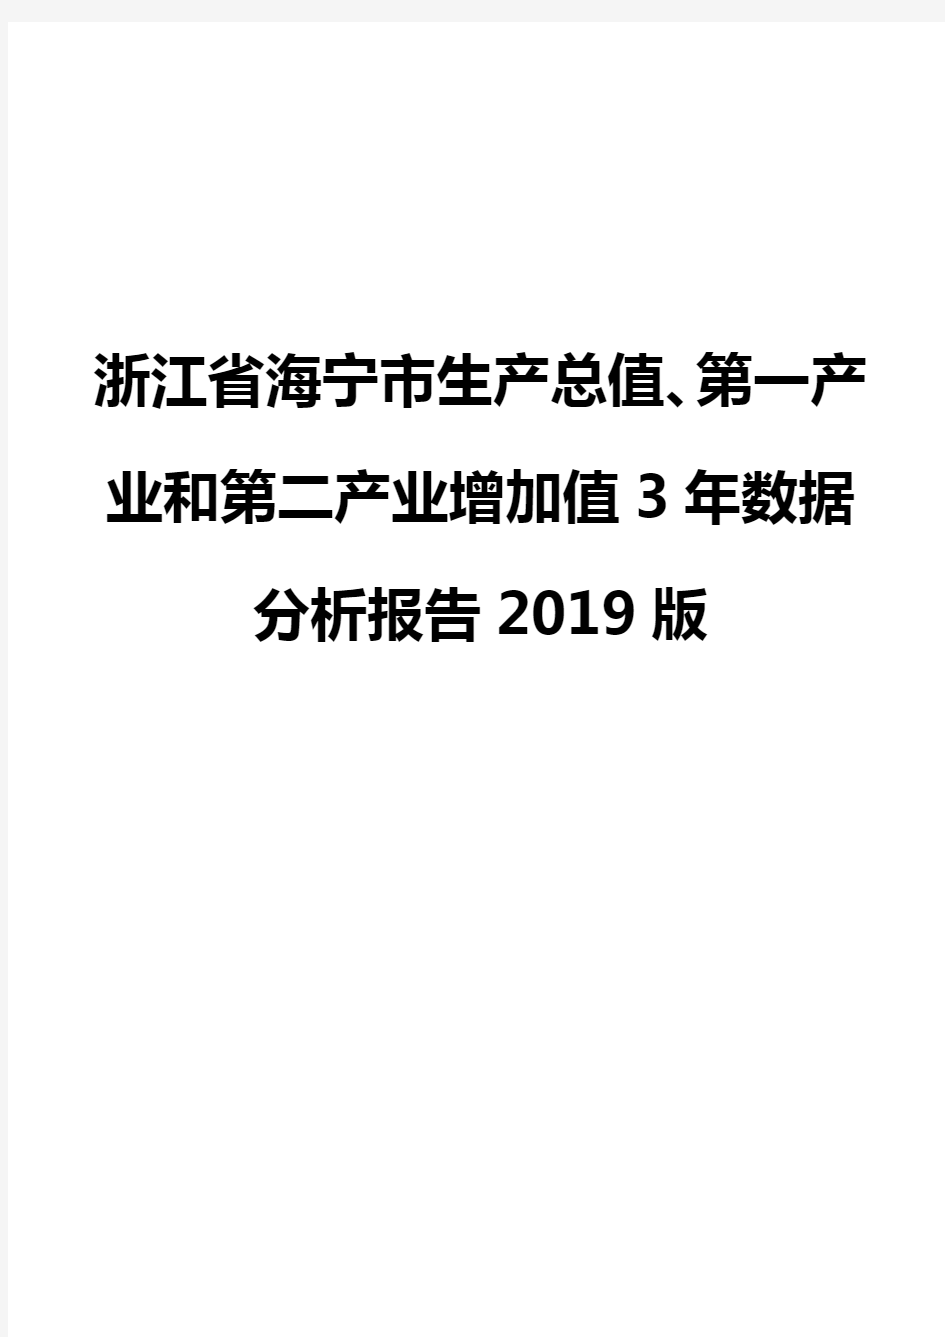 浙江省海宁市生产总值、第一产业和第二产业增加值3年数据分析报告2019版